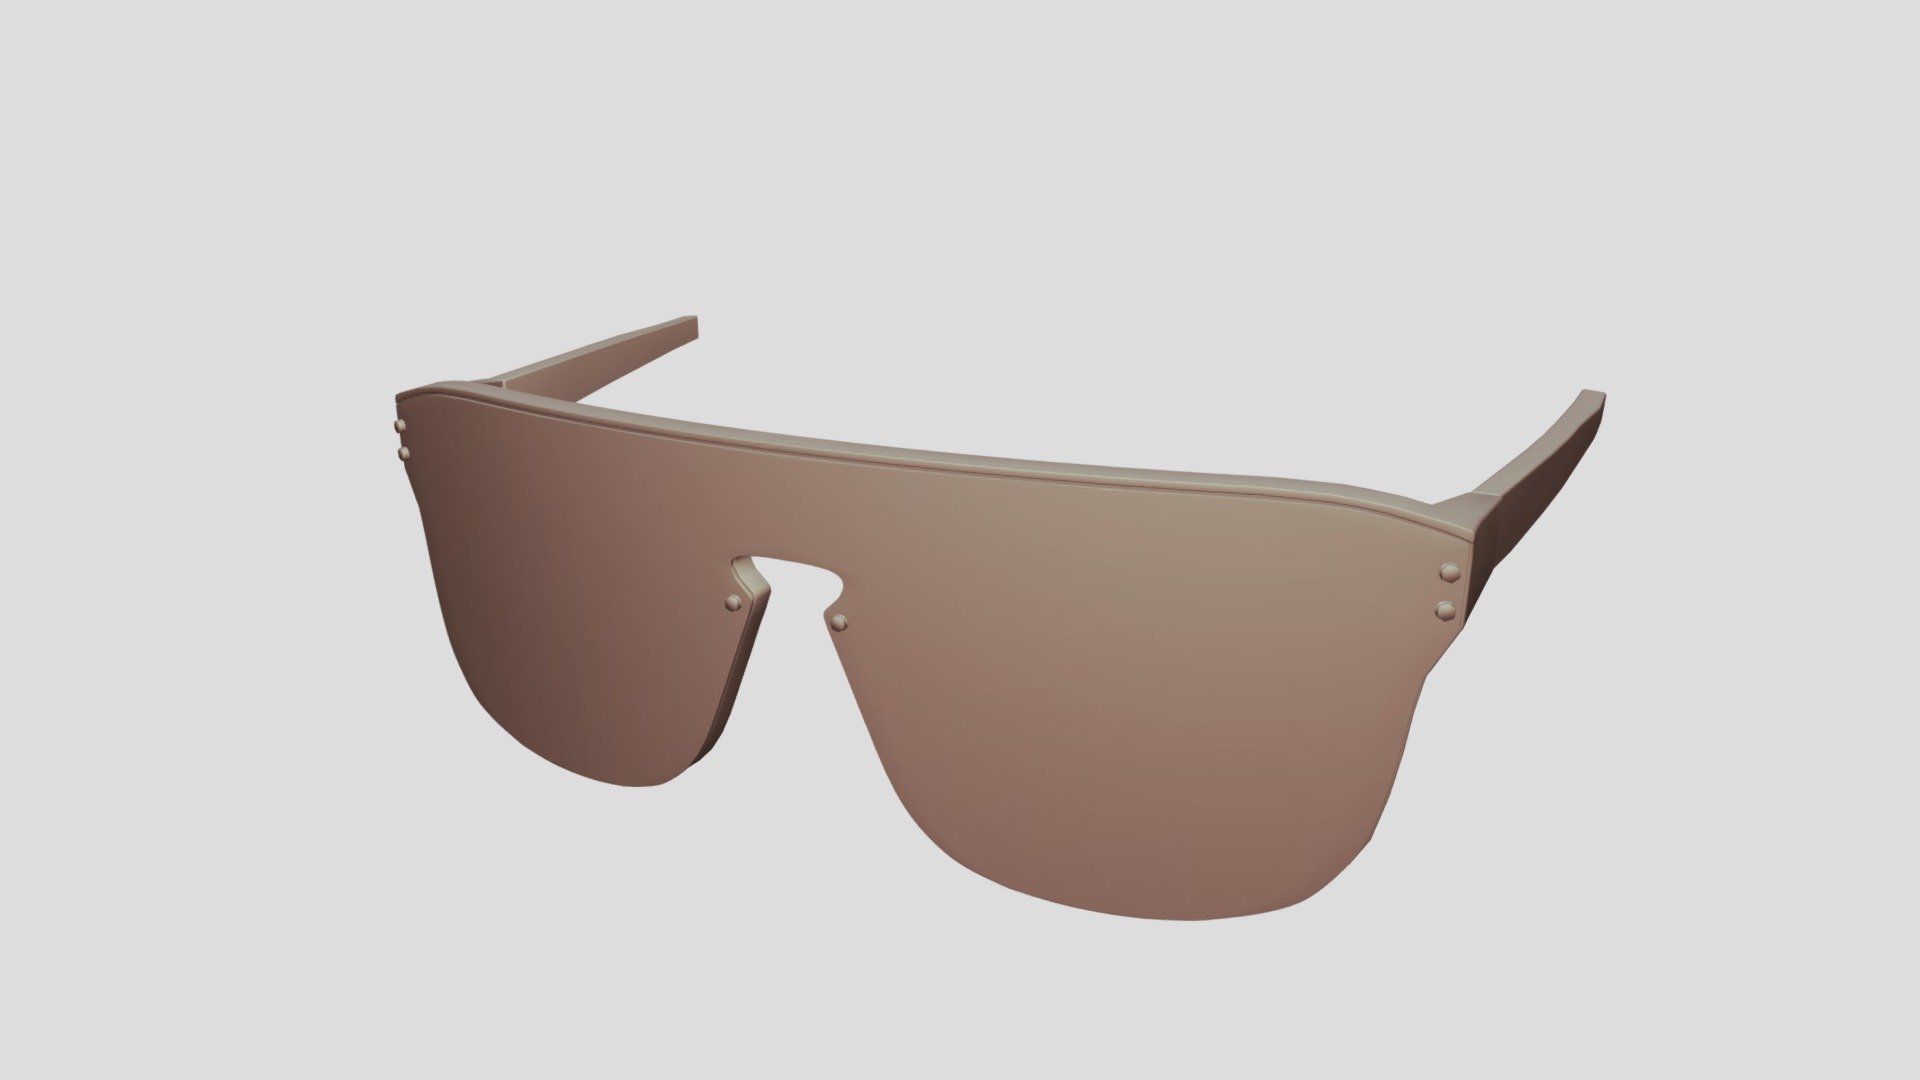 3D model Louis Vuitton Link PM Square Sunglasses VR / AR / low-poly